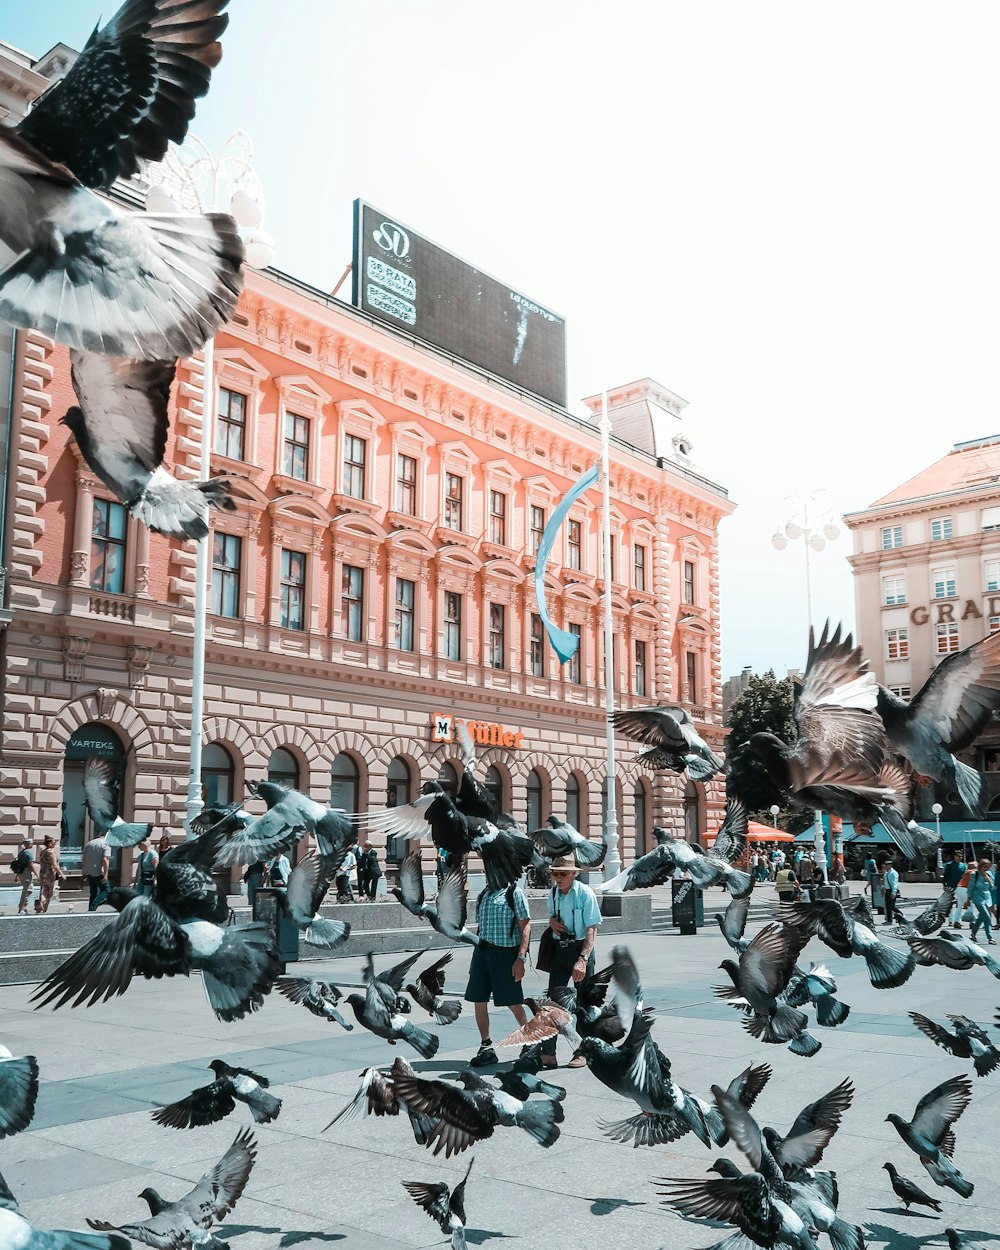 personnes marchant dans la rue avec des pigeons